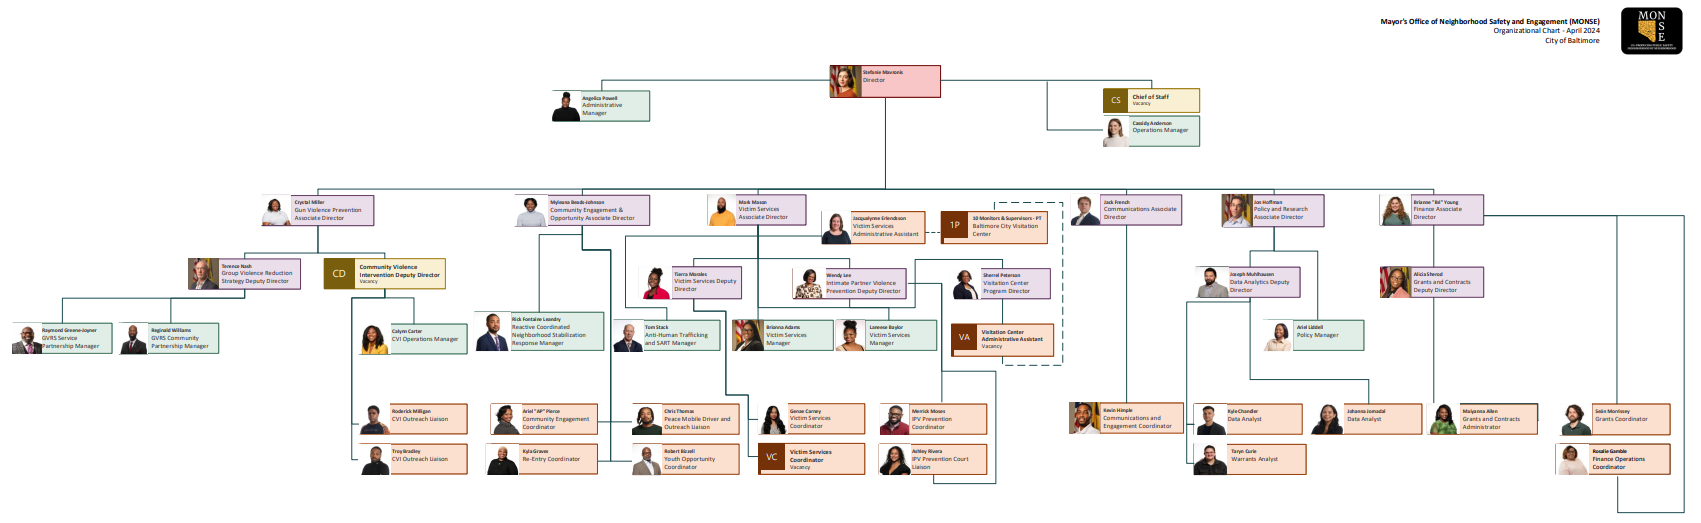 MONSE Staff Organizational Chart with Photos 